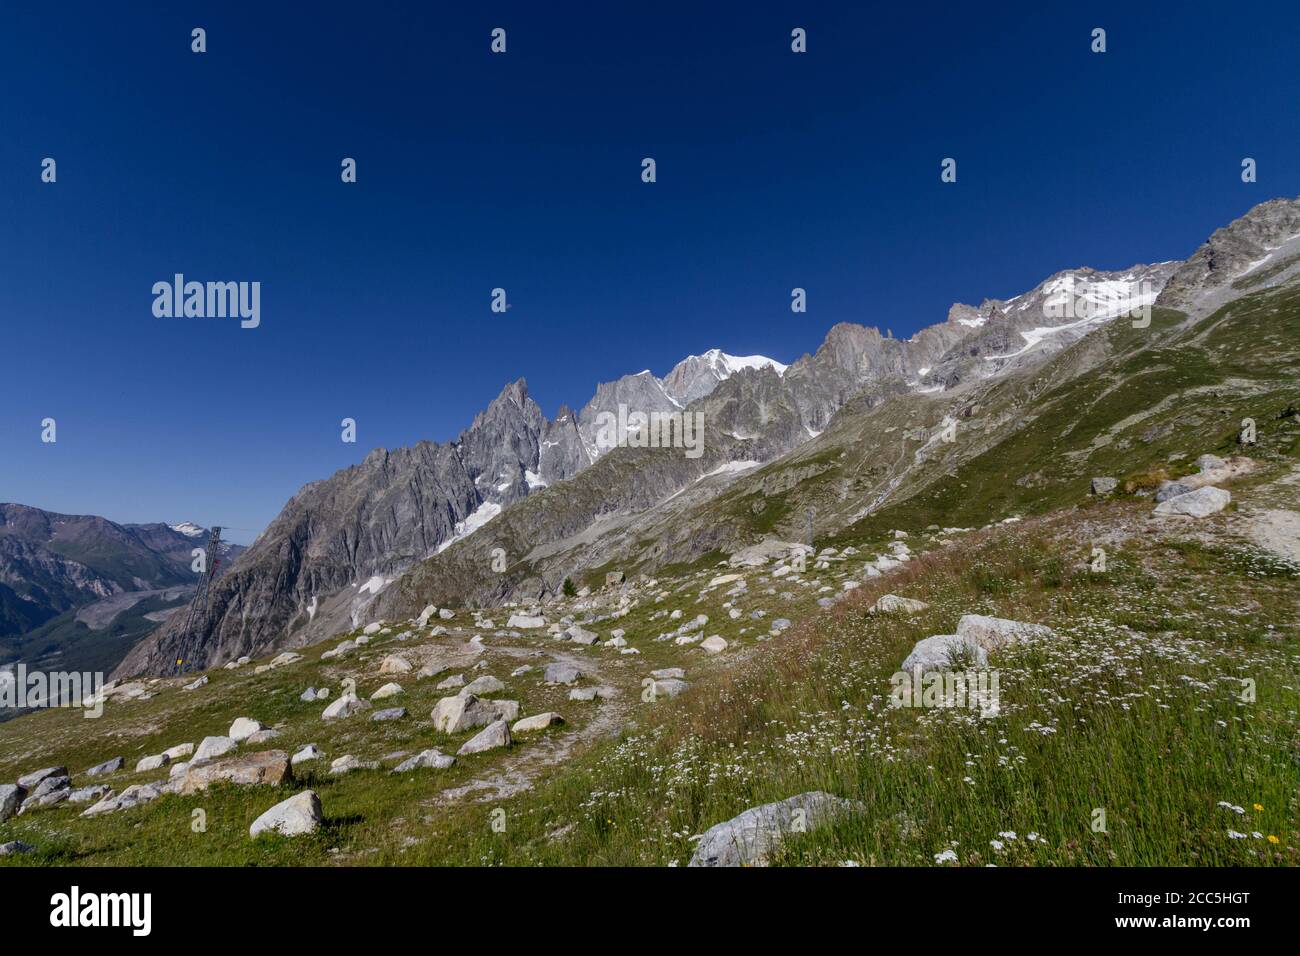 La vista de los Alpes desde el Mont Blanc Foto de stock